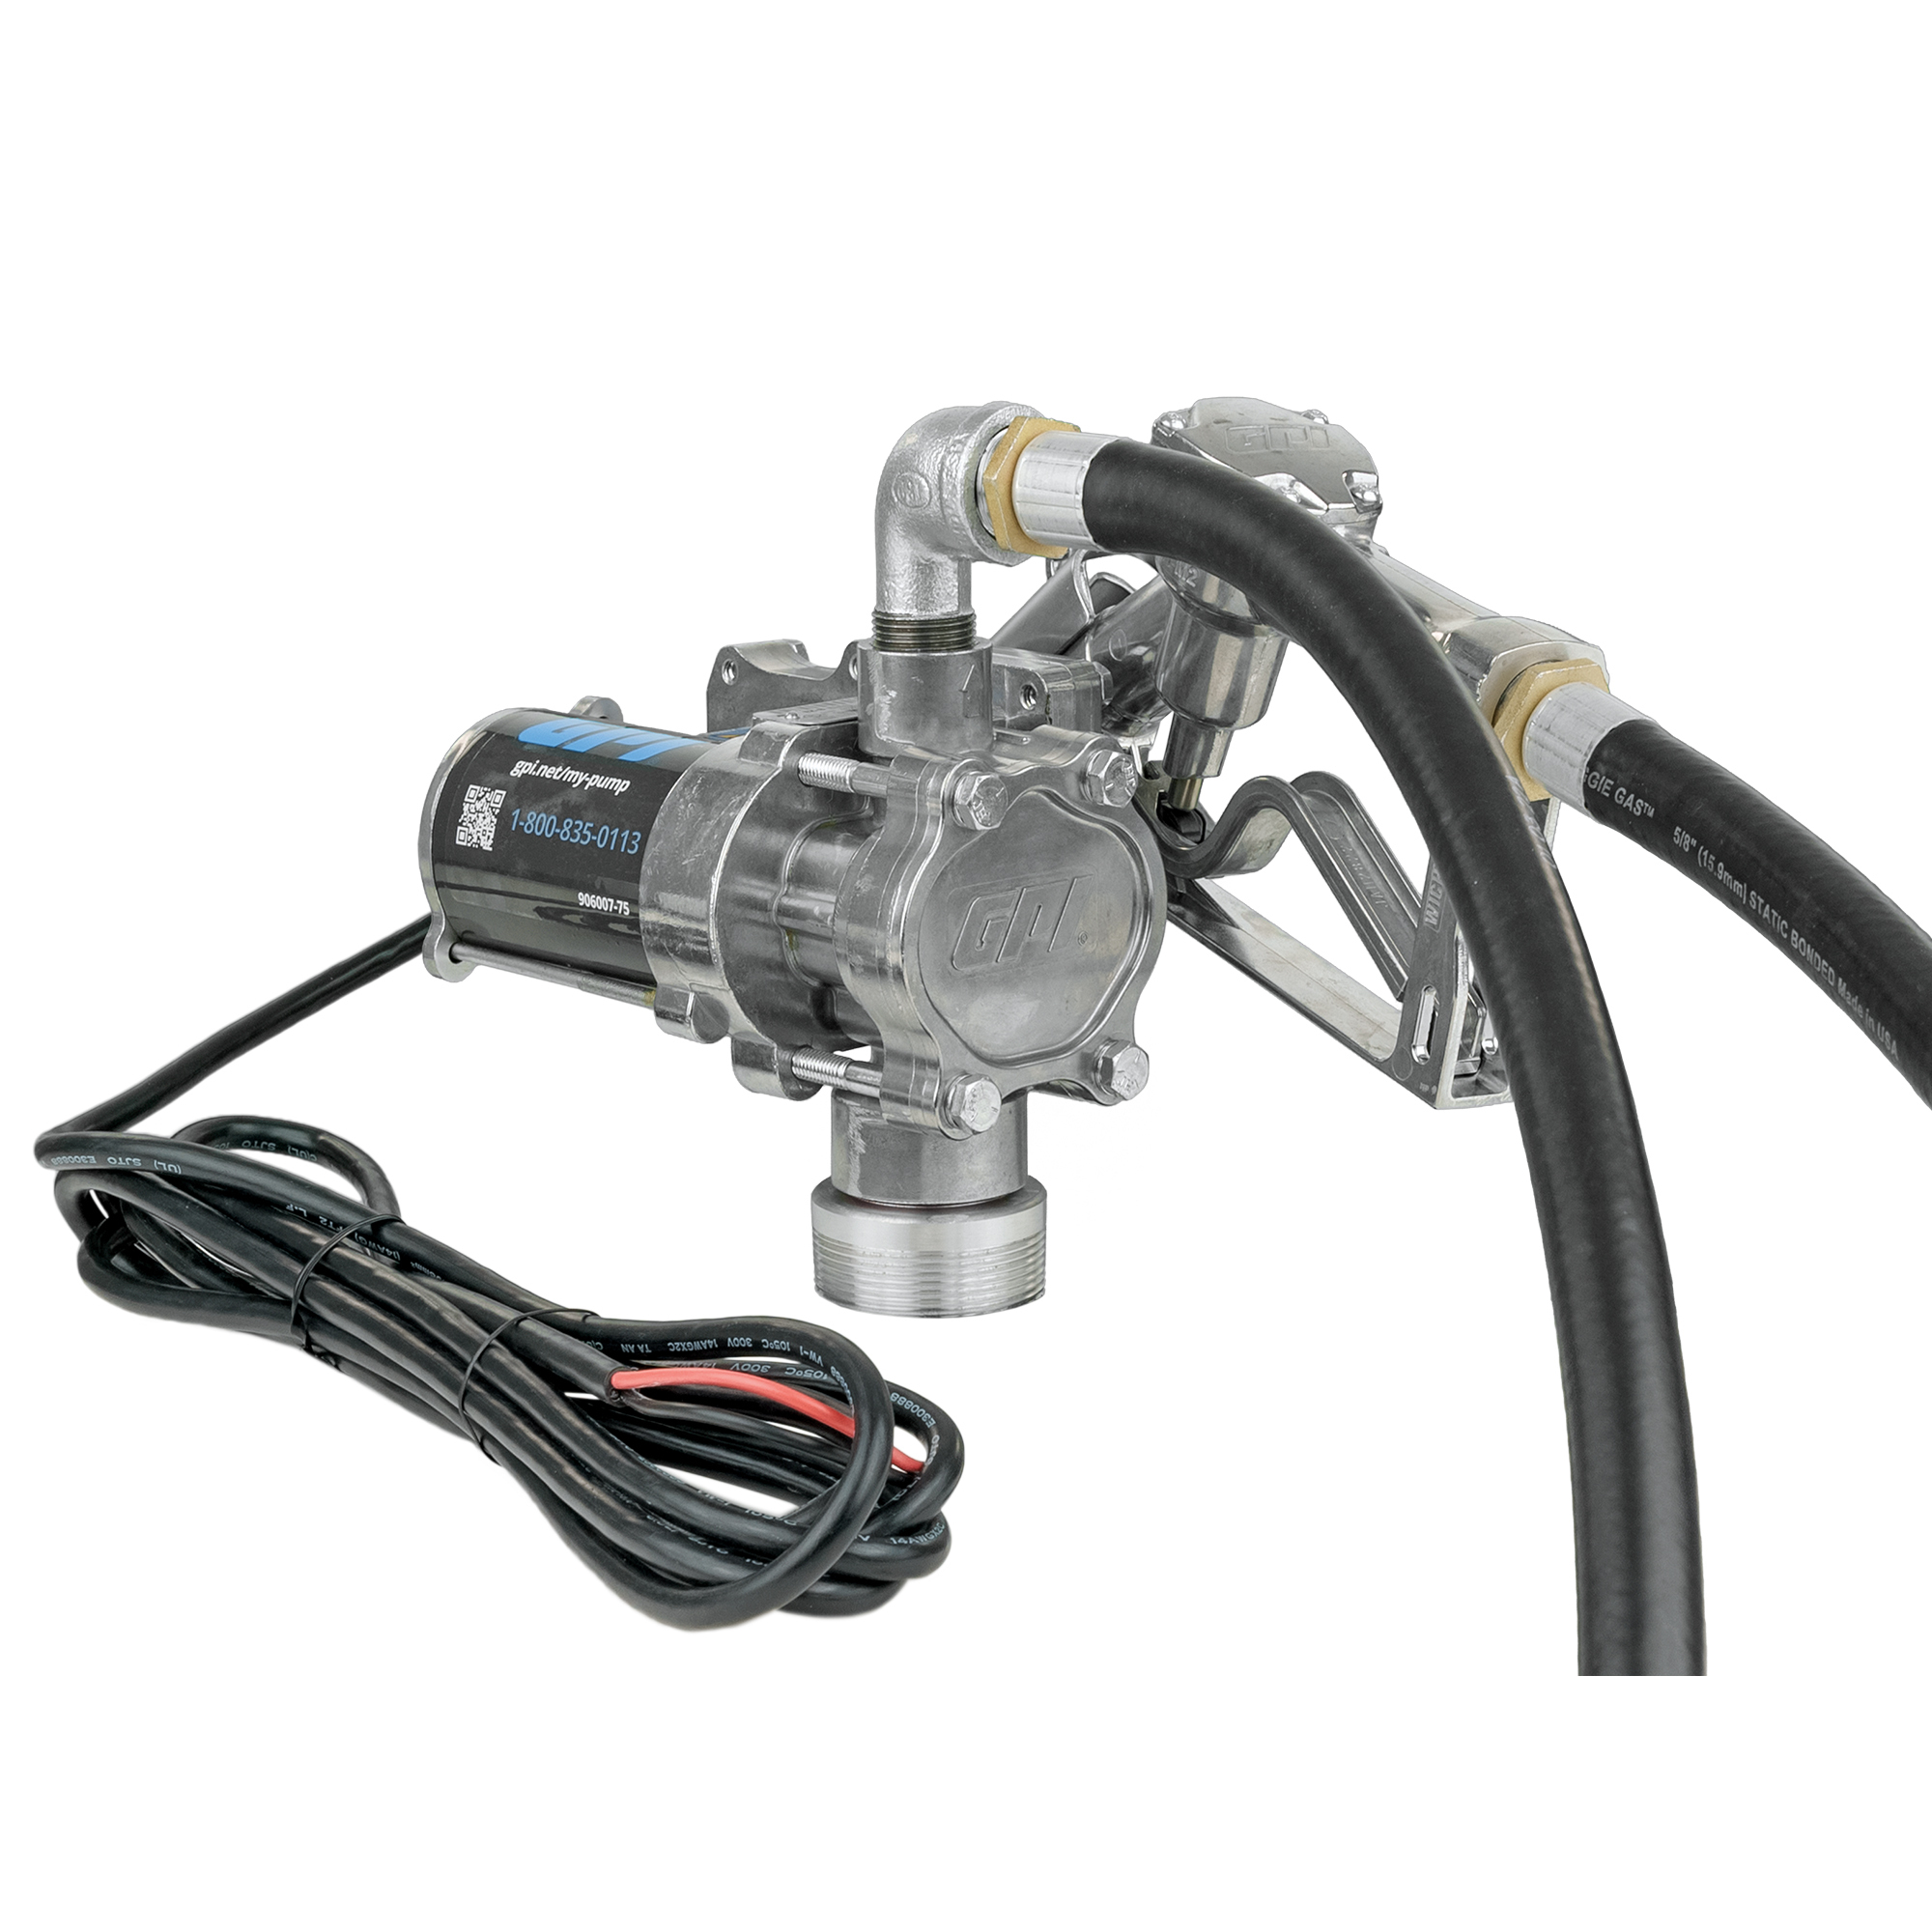 GPI EZ-8 12V Fuel Transfer Pump, 8 GPM, Manual Nozzle, Hose, Model EZ-8 Pump